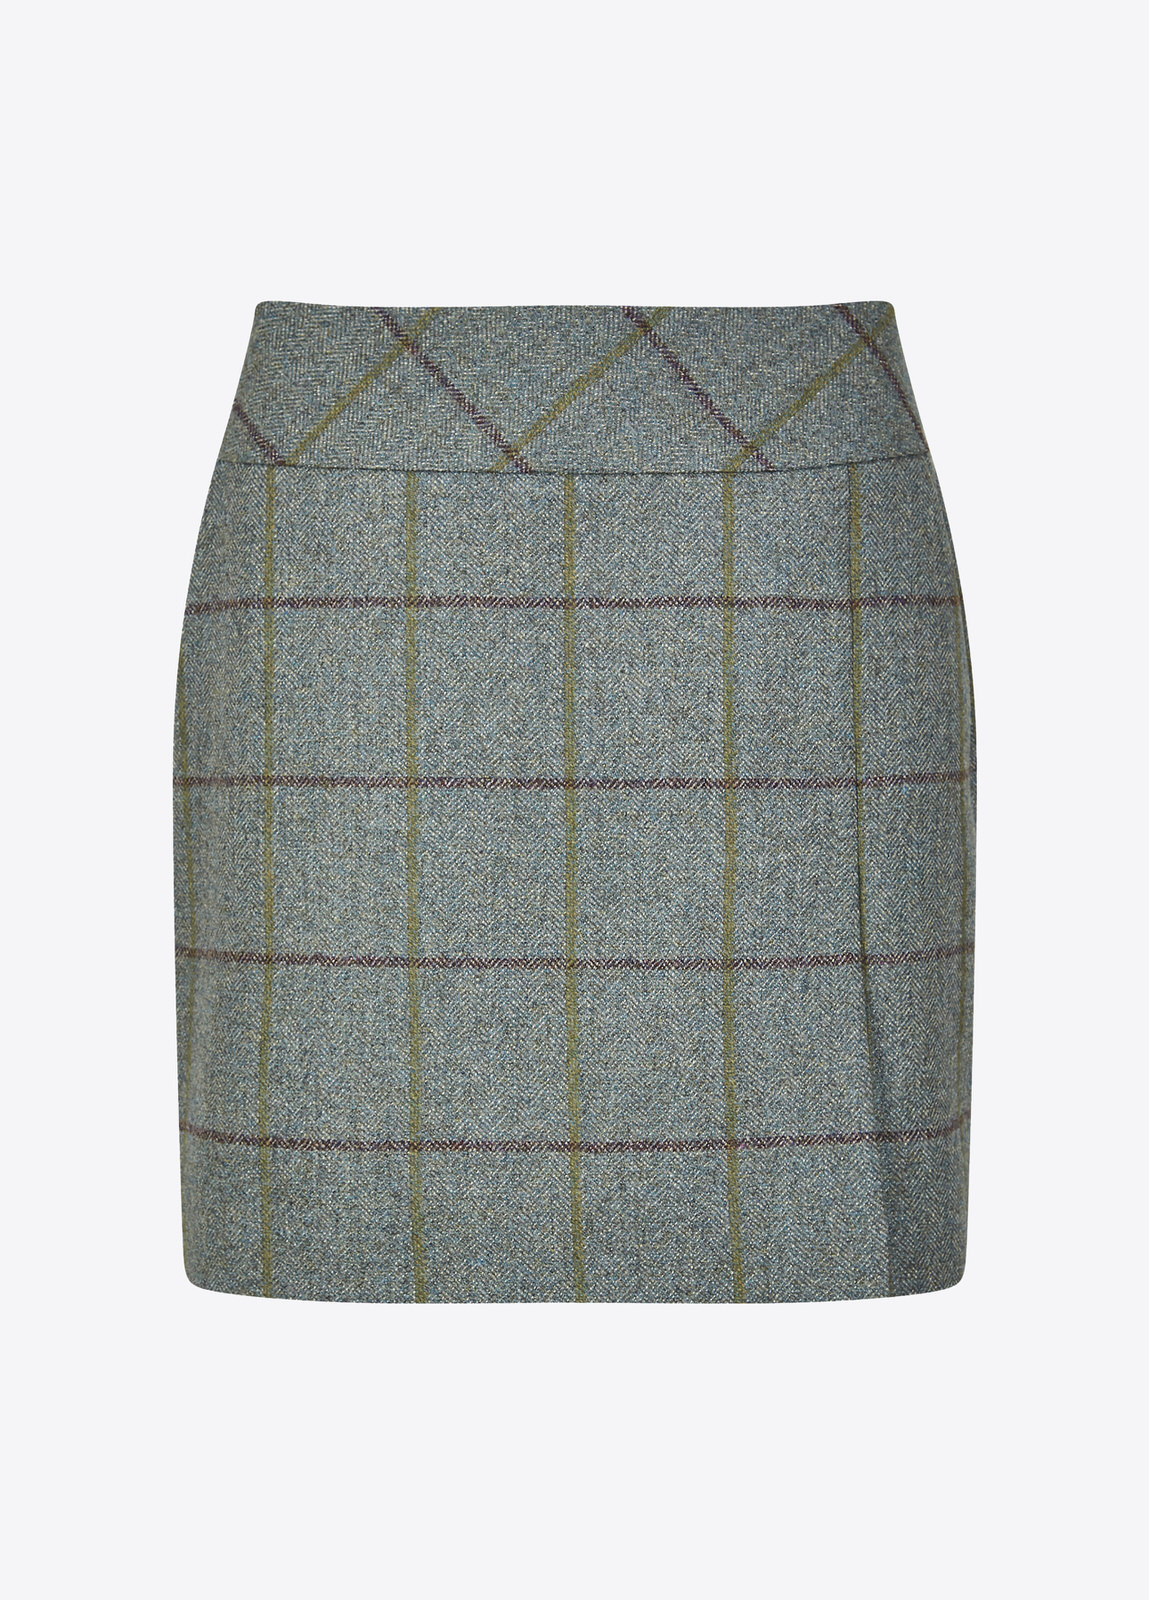 Bellflower Tweed Skirt - Sorrel